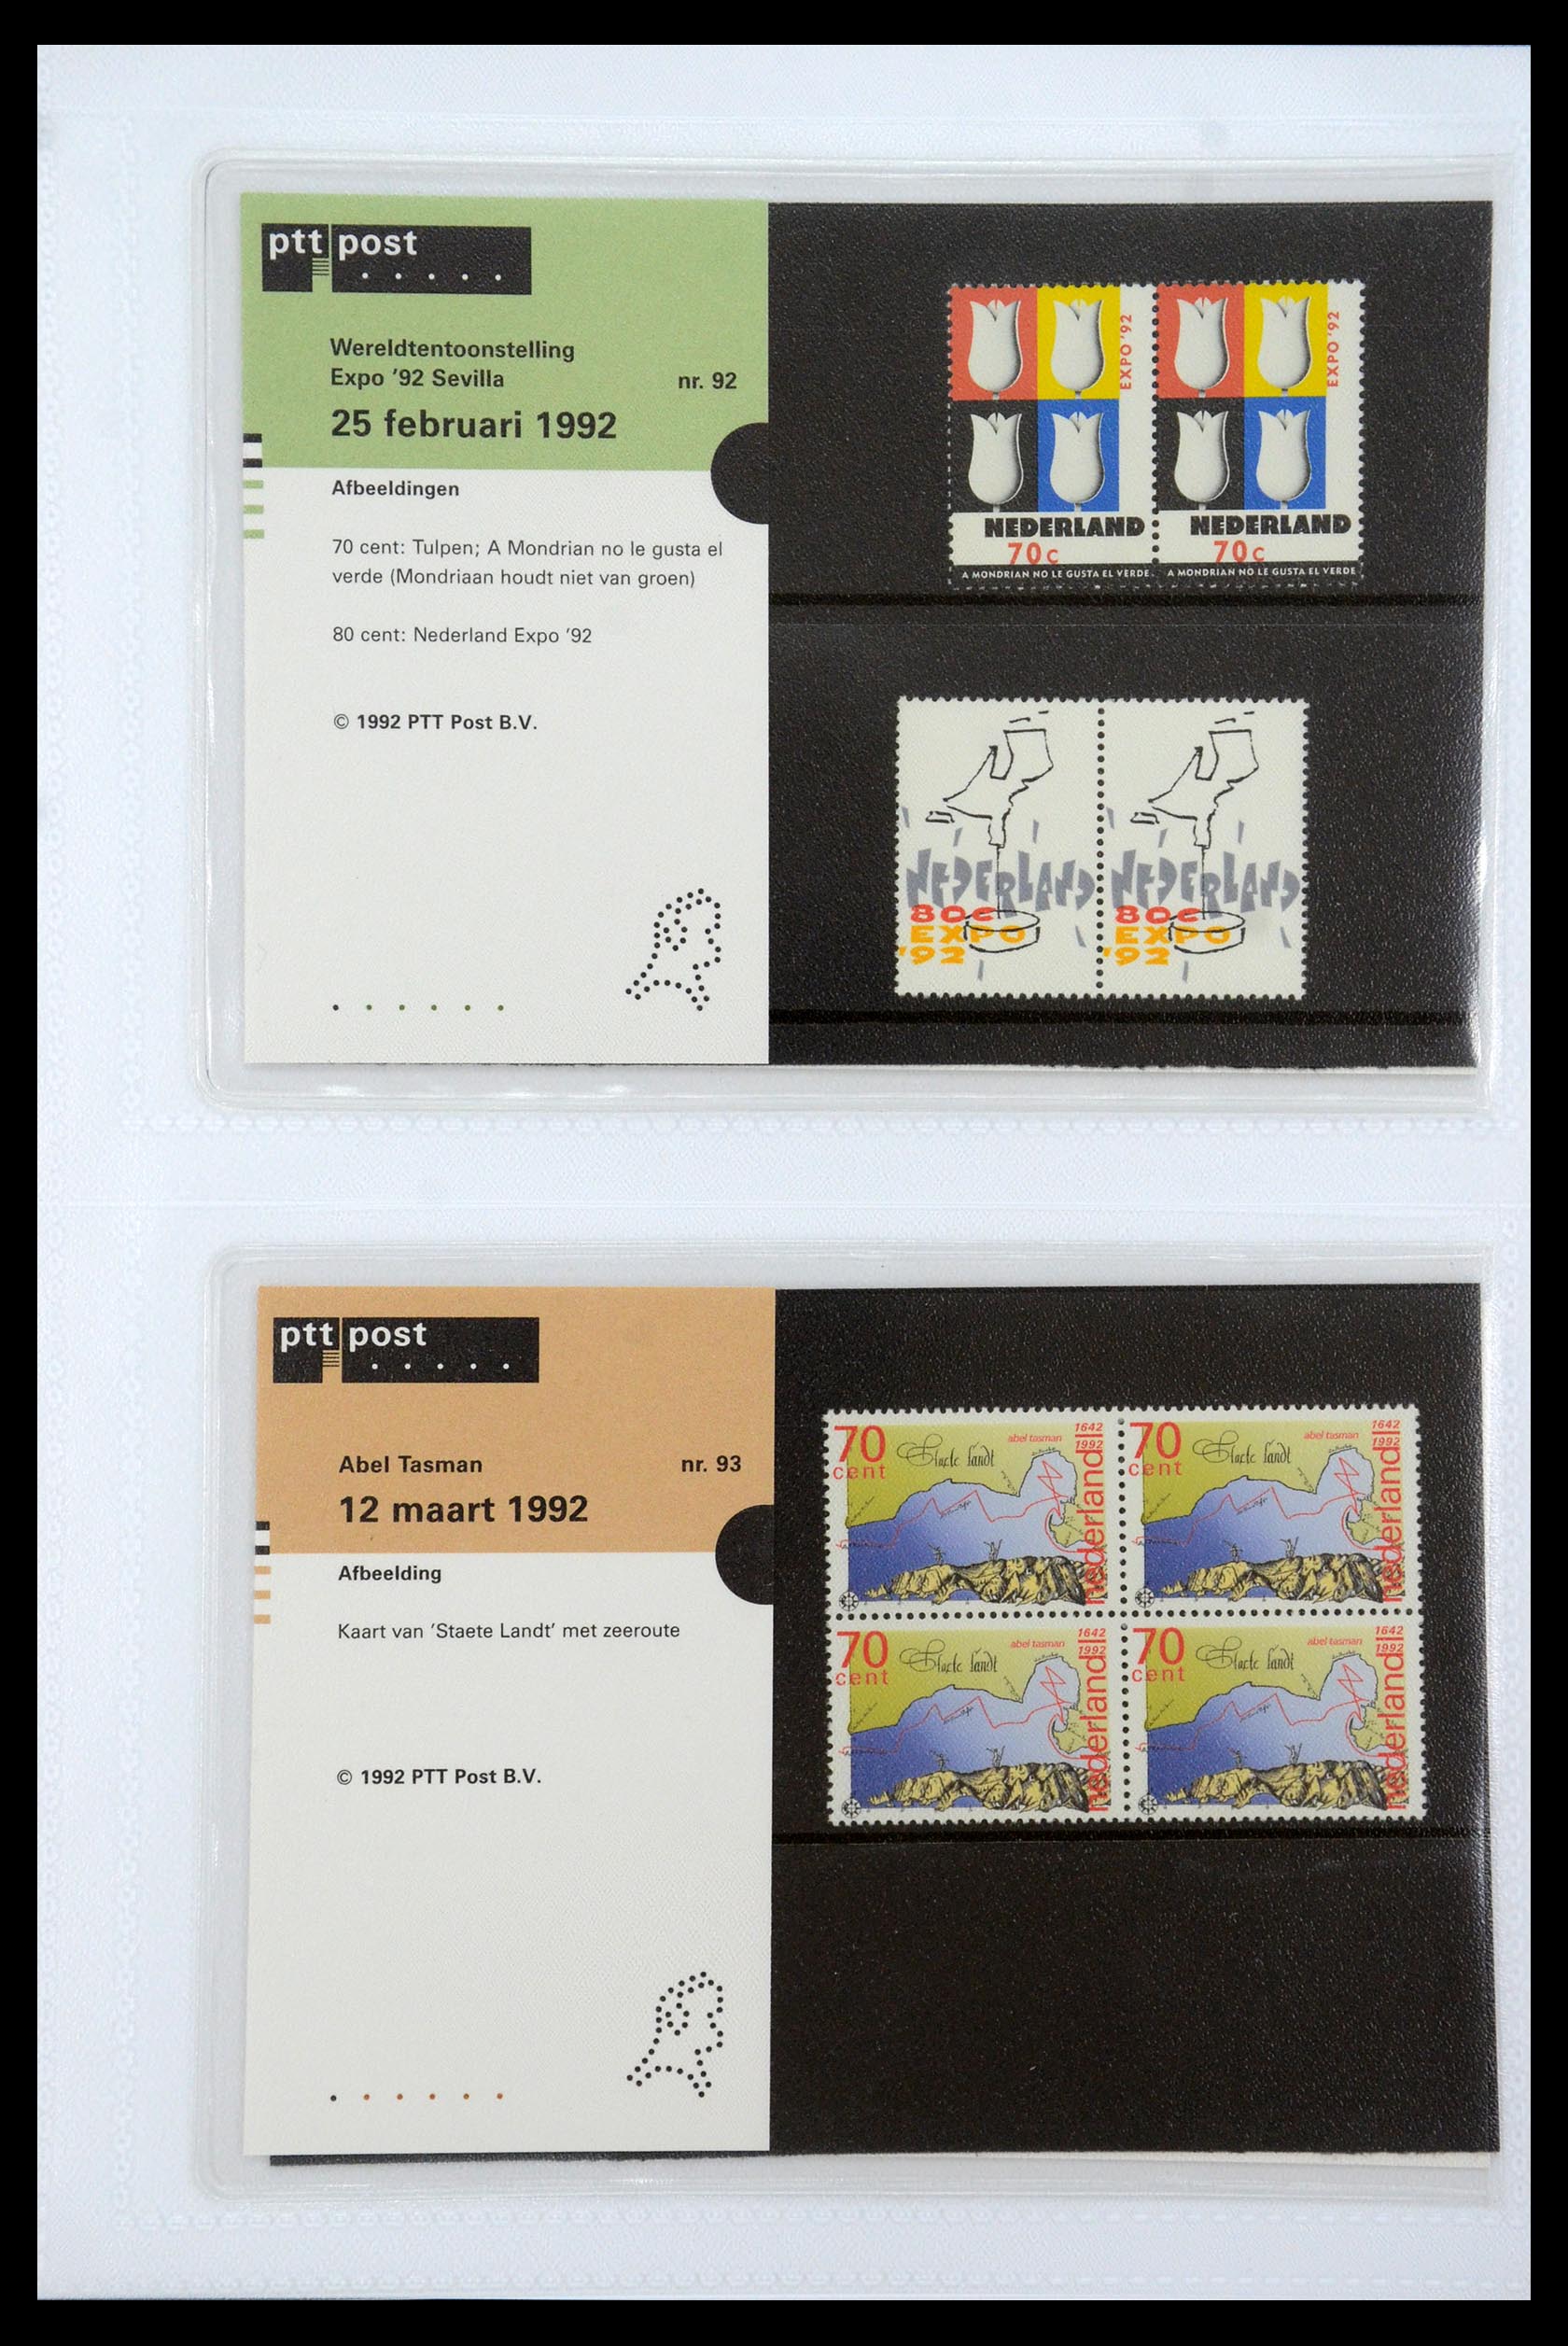 35947 047 - Stamp Collection 35947 Netherlands PTT presentation packs 1982-2019!